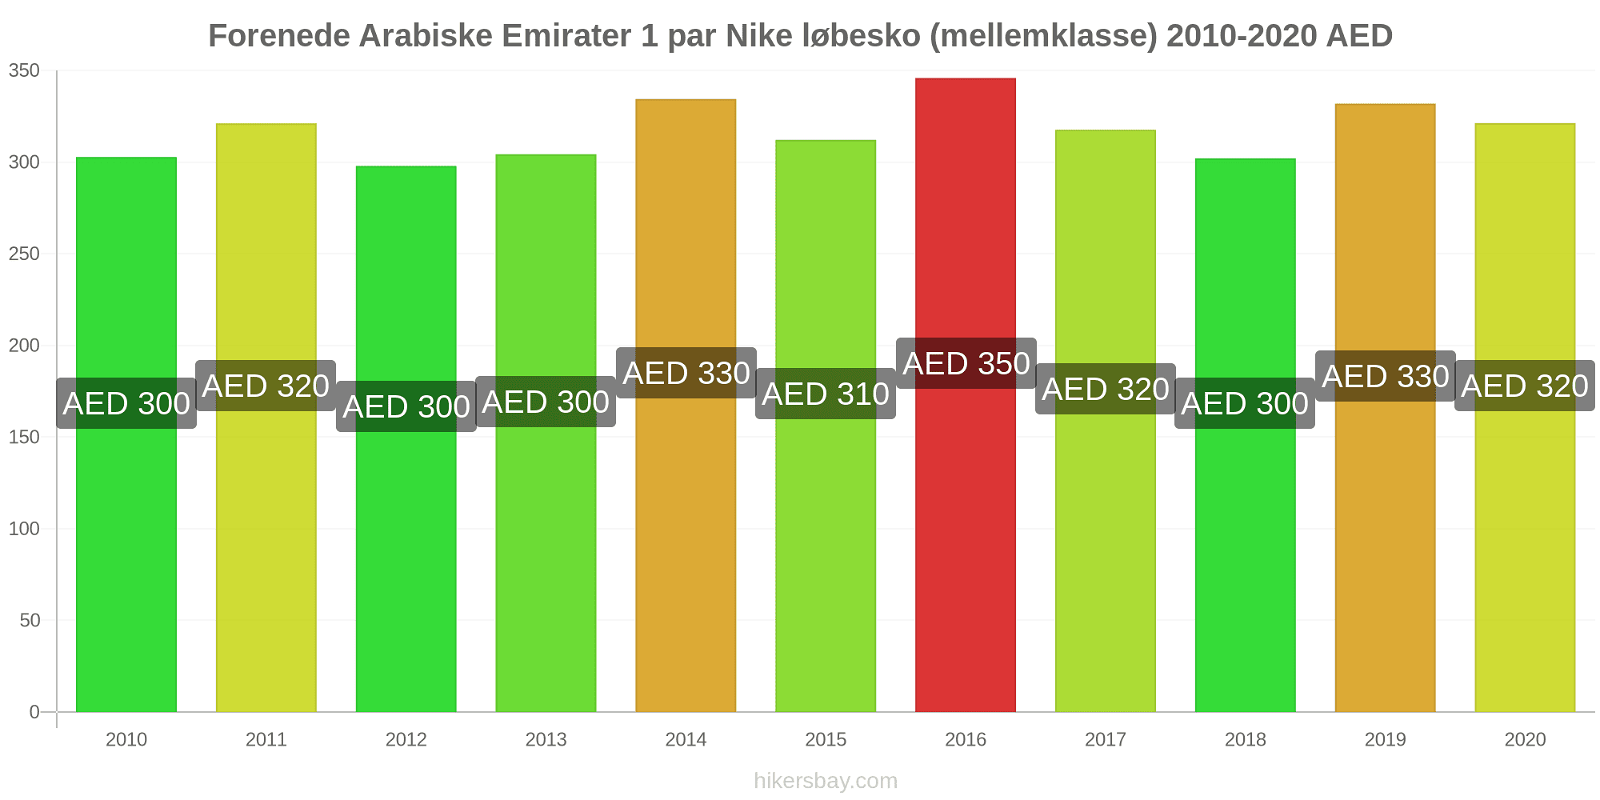 Forenede Arabiske Emirater prisændringer 1 par Nike løbesko (mellemklasse) hikersbay.com